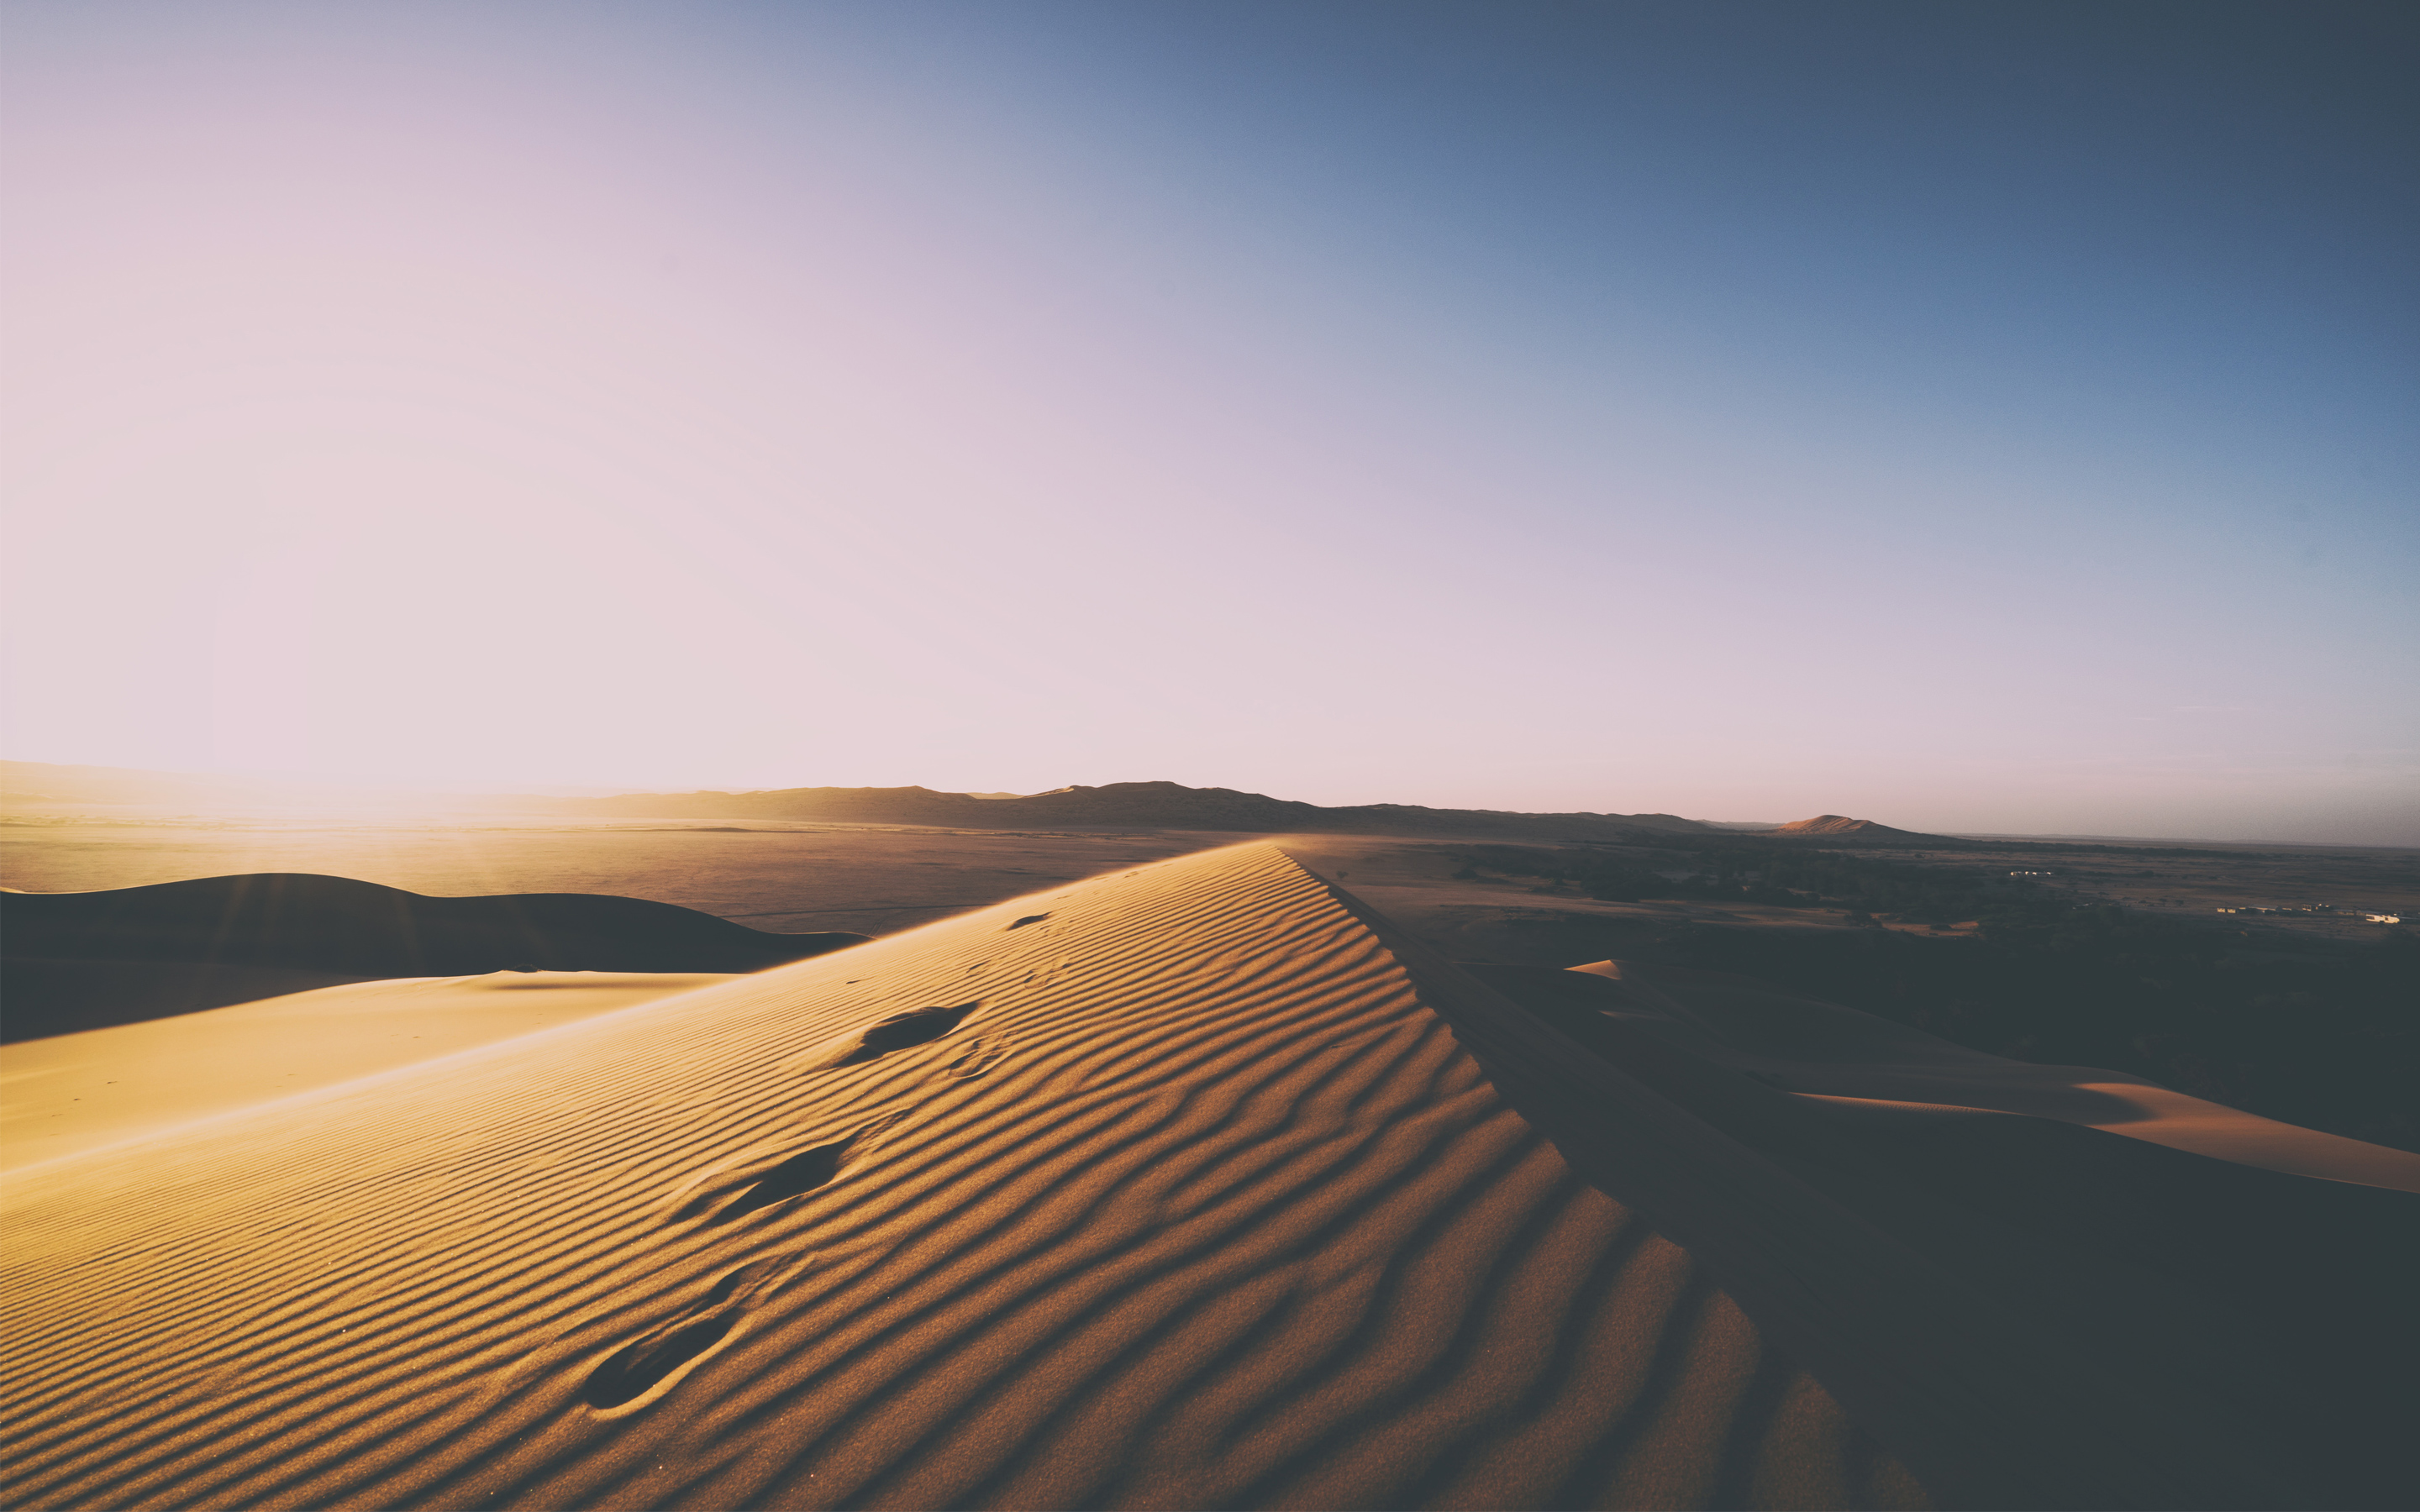 Desert Sand Dunes 5K756069869 - Desert Sand Dunes 5K - Sand, Mountains, Dunes, Desert